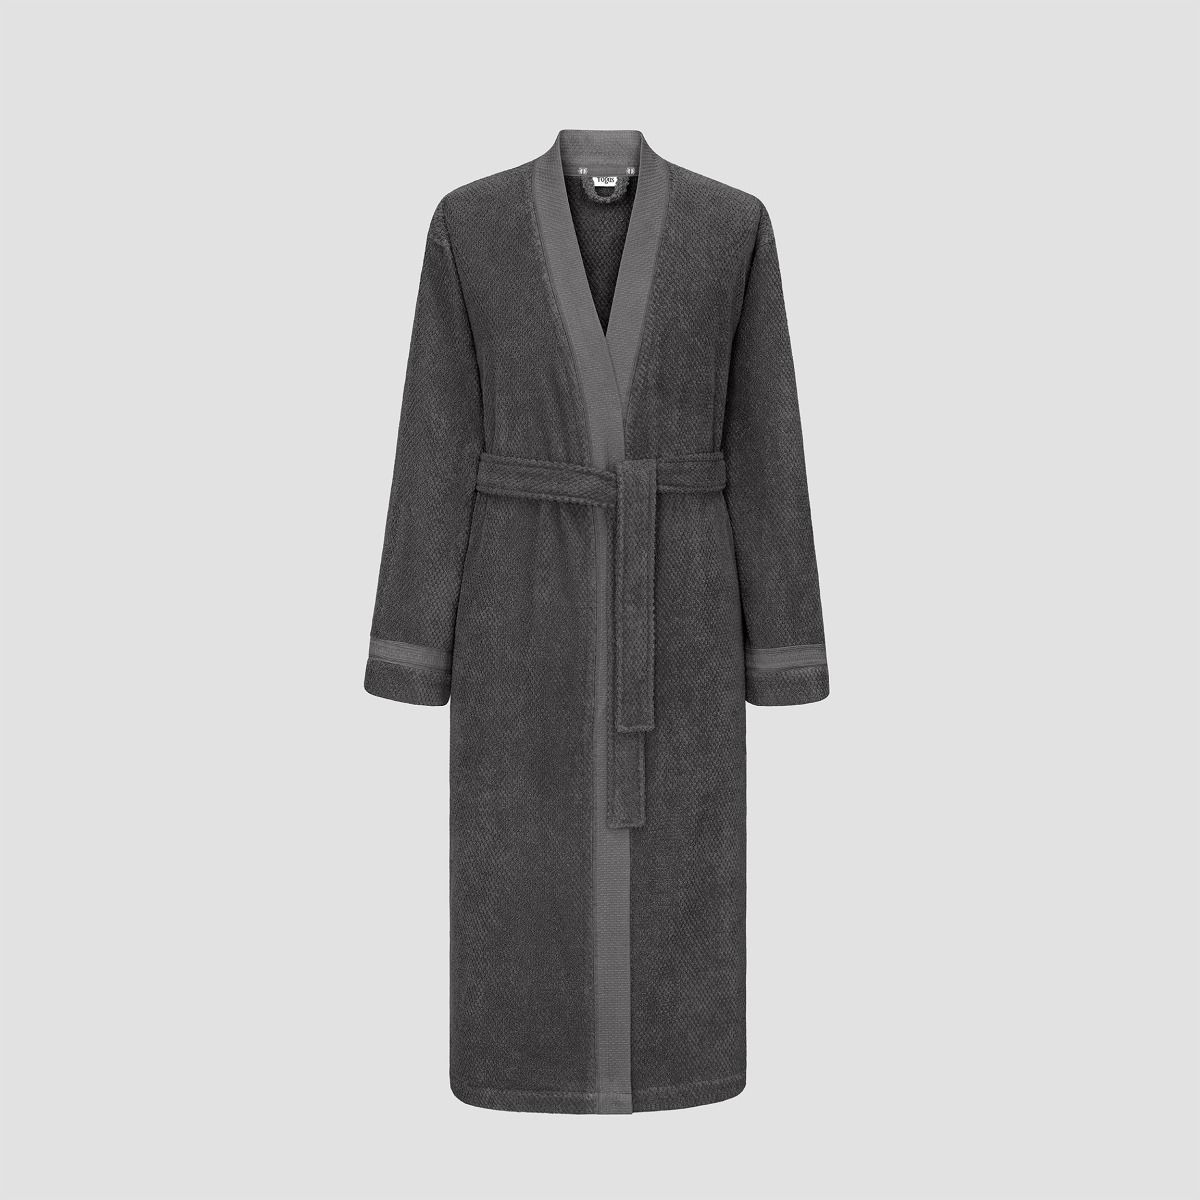 Банный халат Миэль цвет: темно-серый (XL), размер xL tgs871054 Банный халат Миэль цвет: темно-серый (XL) - фото 1